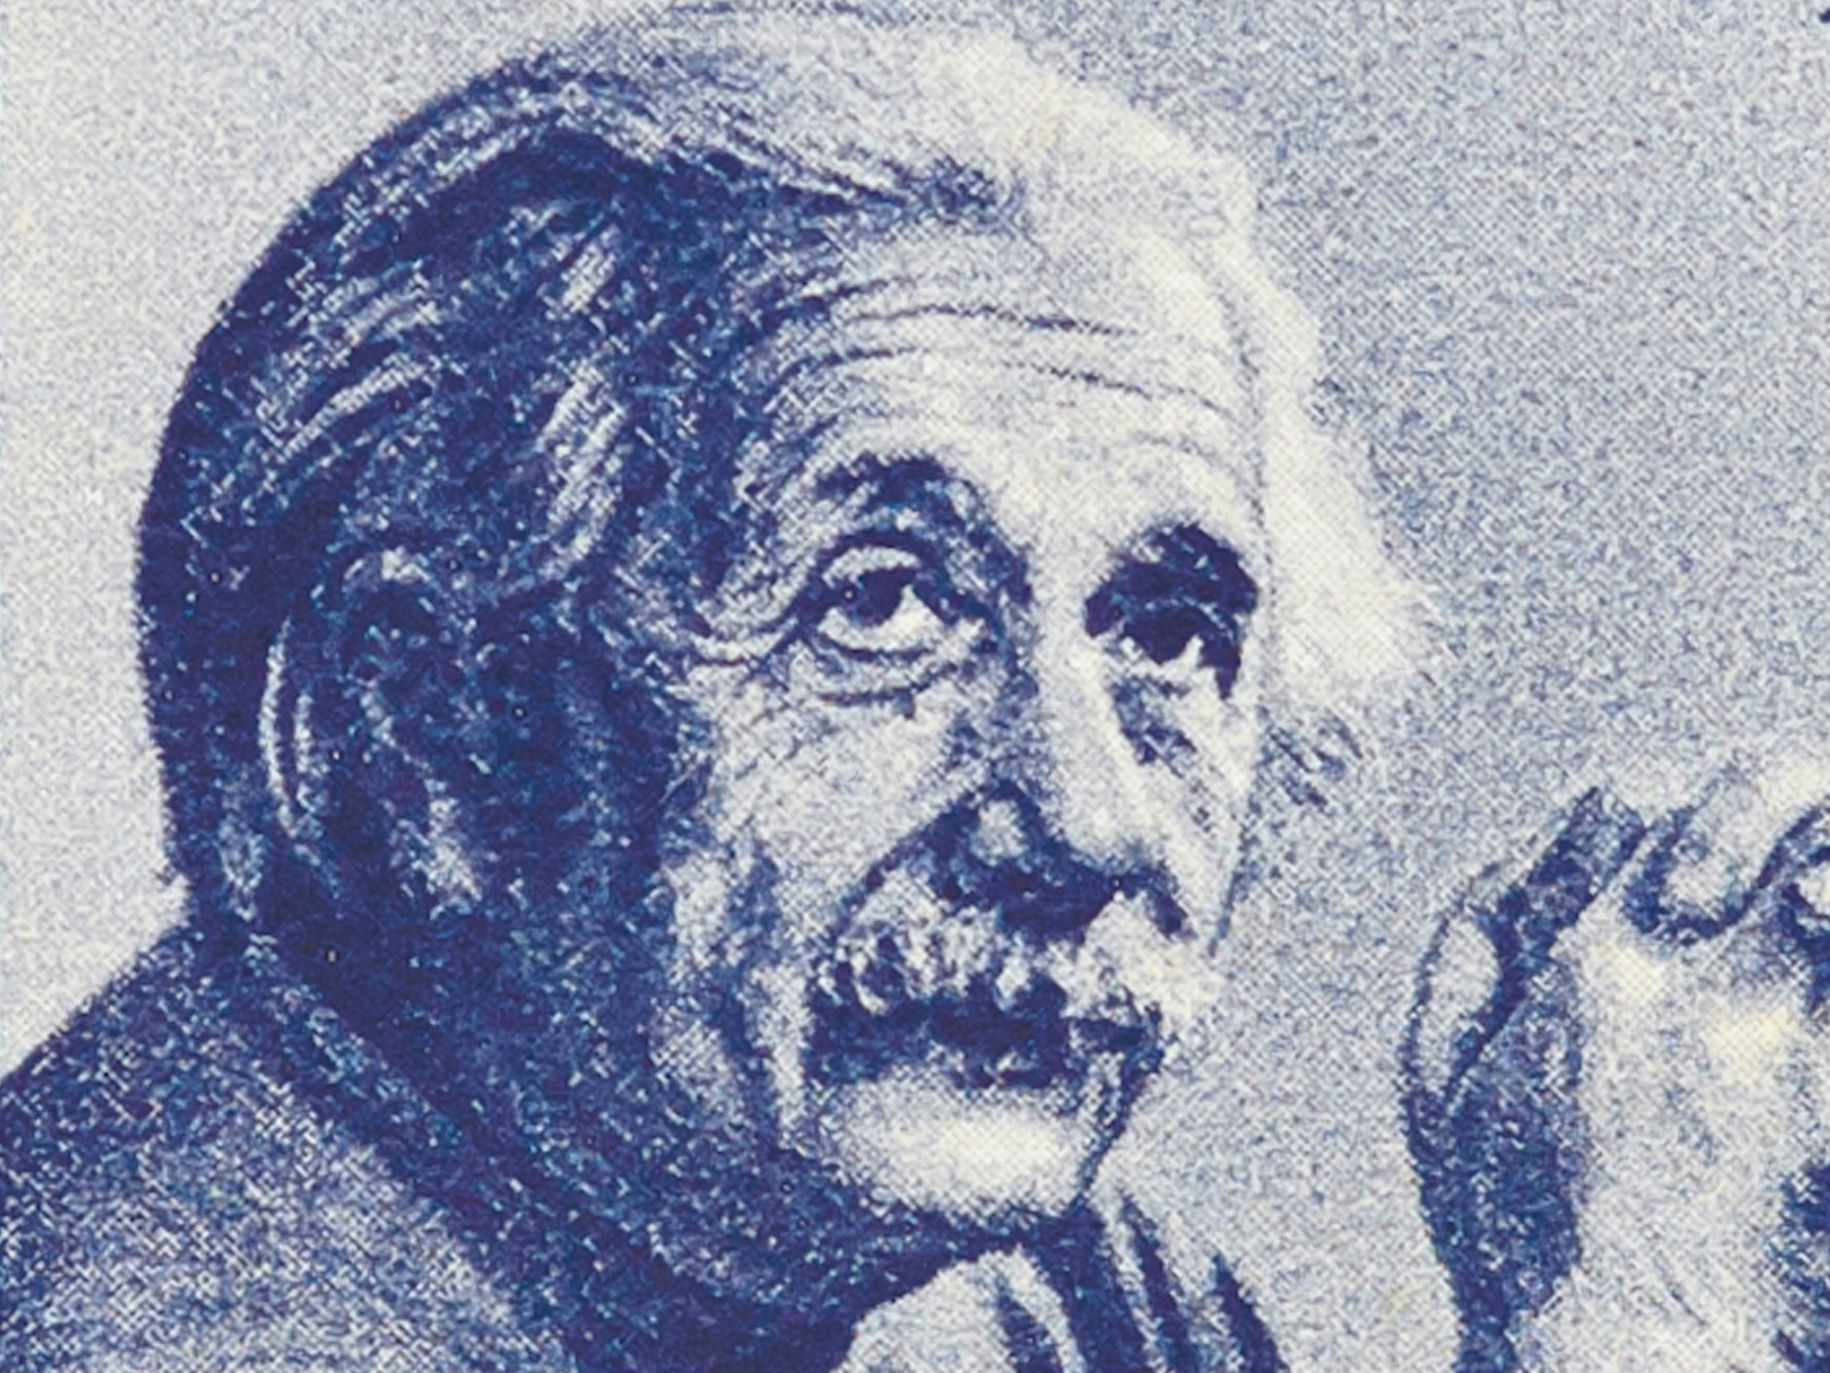 Einstein escreveu a um chapeleiro, e a carta vale dez mil euros